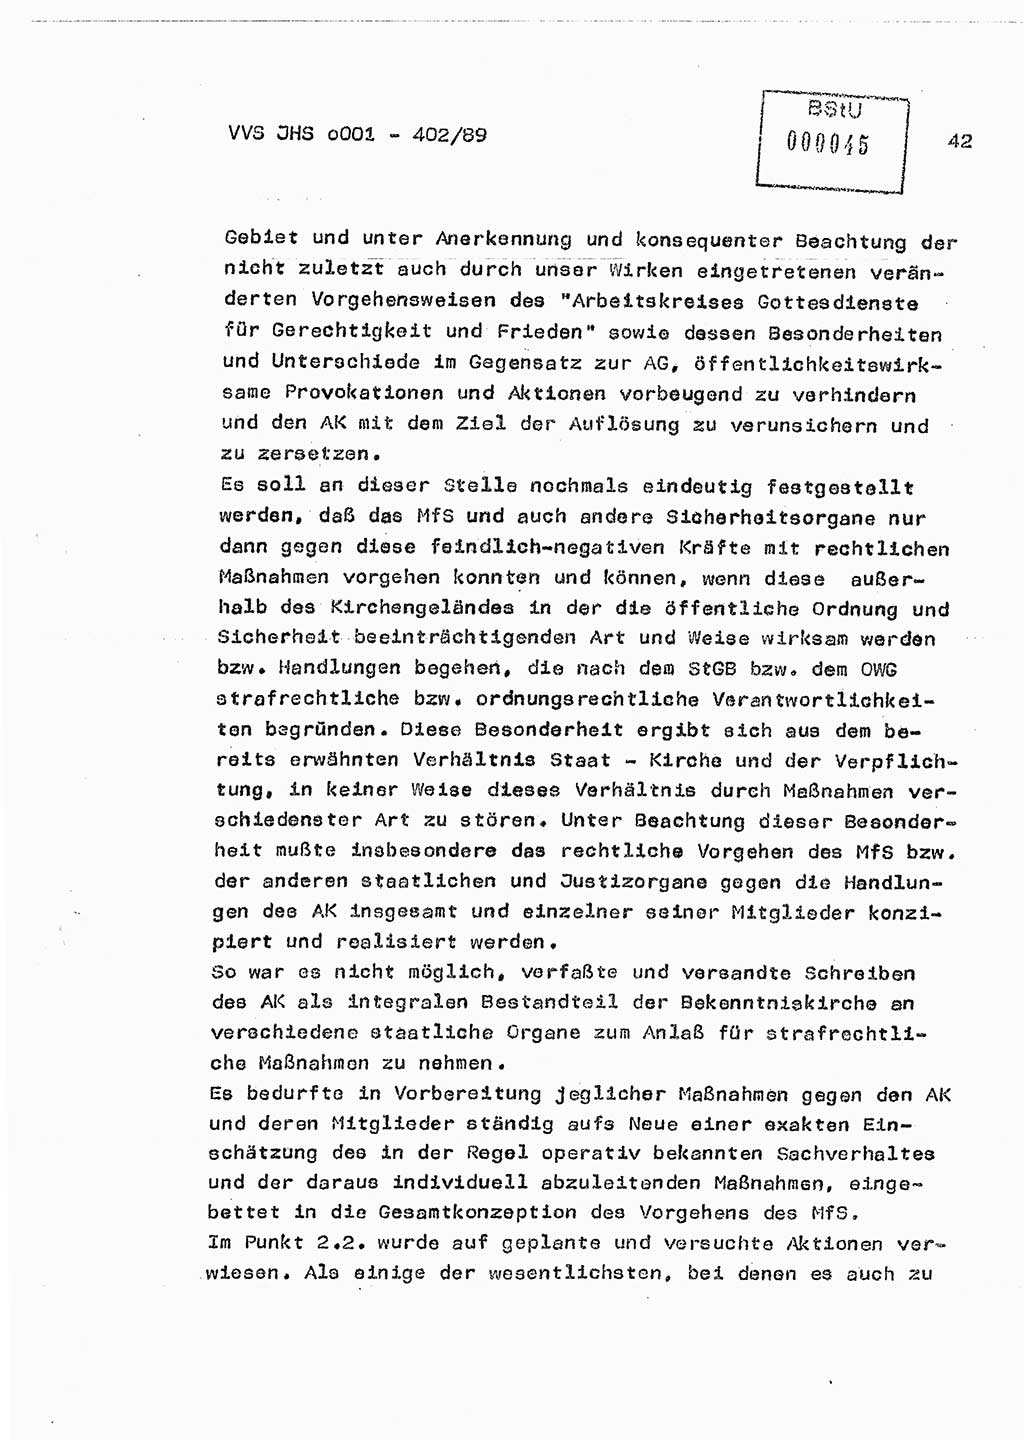 Diplomarbeit Major Günter Müller (HA Ⅸ/9), Ministerium für Staatssicherheit (MfS) [Deutsche Demokratische Republik (DDR)], Juristische Hochschule (JHS), Vertrauliche Verschlußsache (VVS) o001-402/89, Potsdam 1989, Seite 42 (Dipl.-Arb. MfS DDR JHS VVS o001-402/89 1989, S. 42)